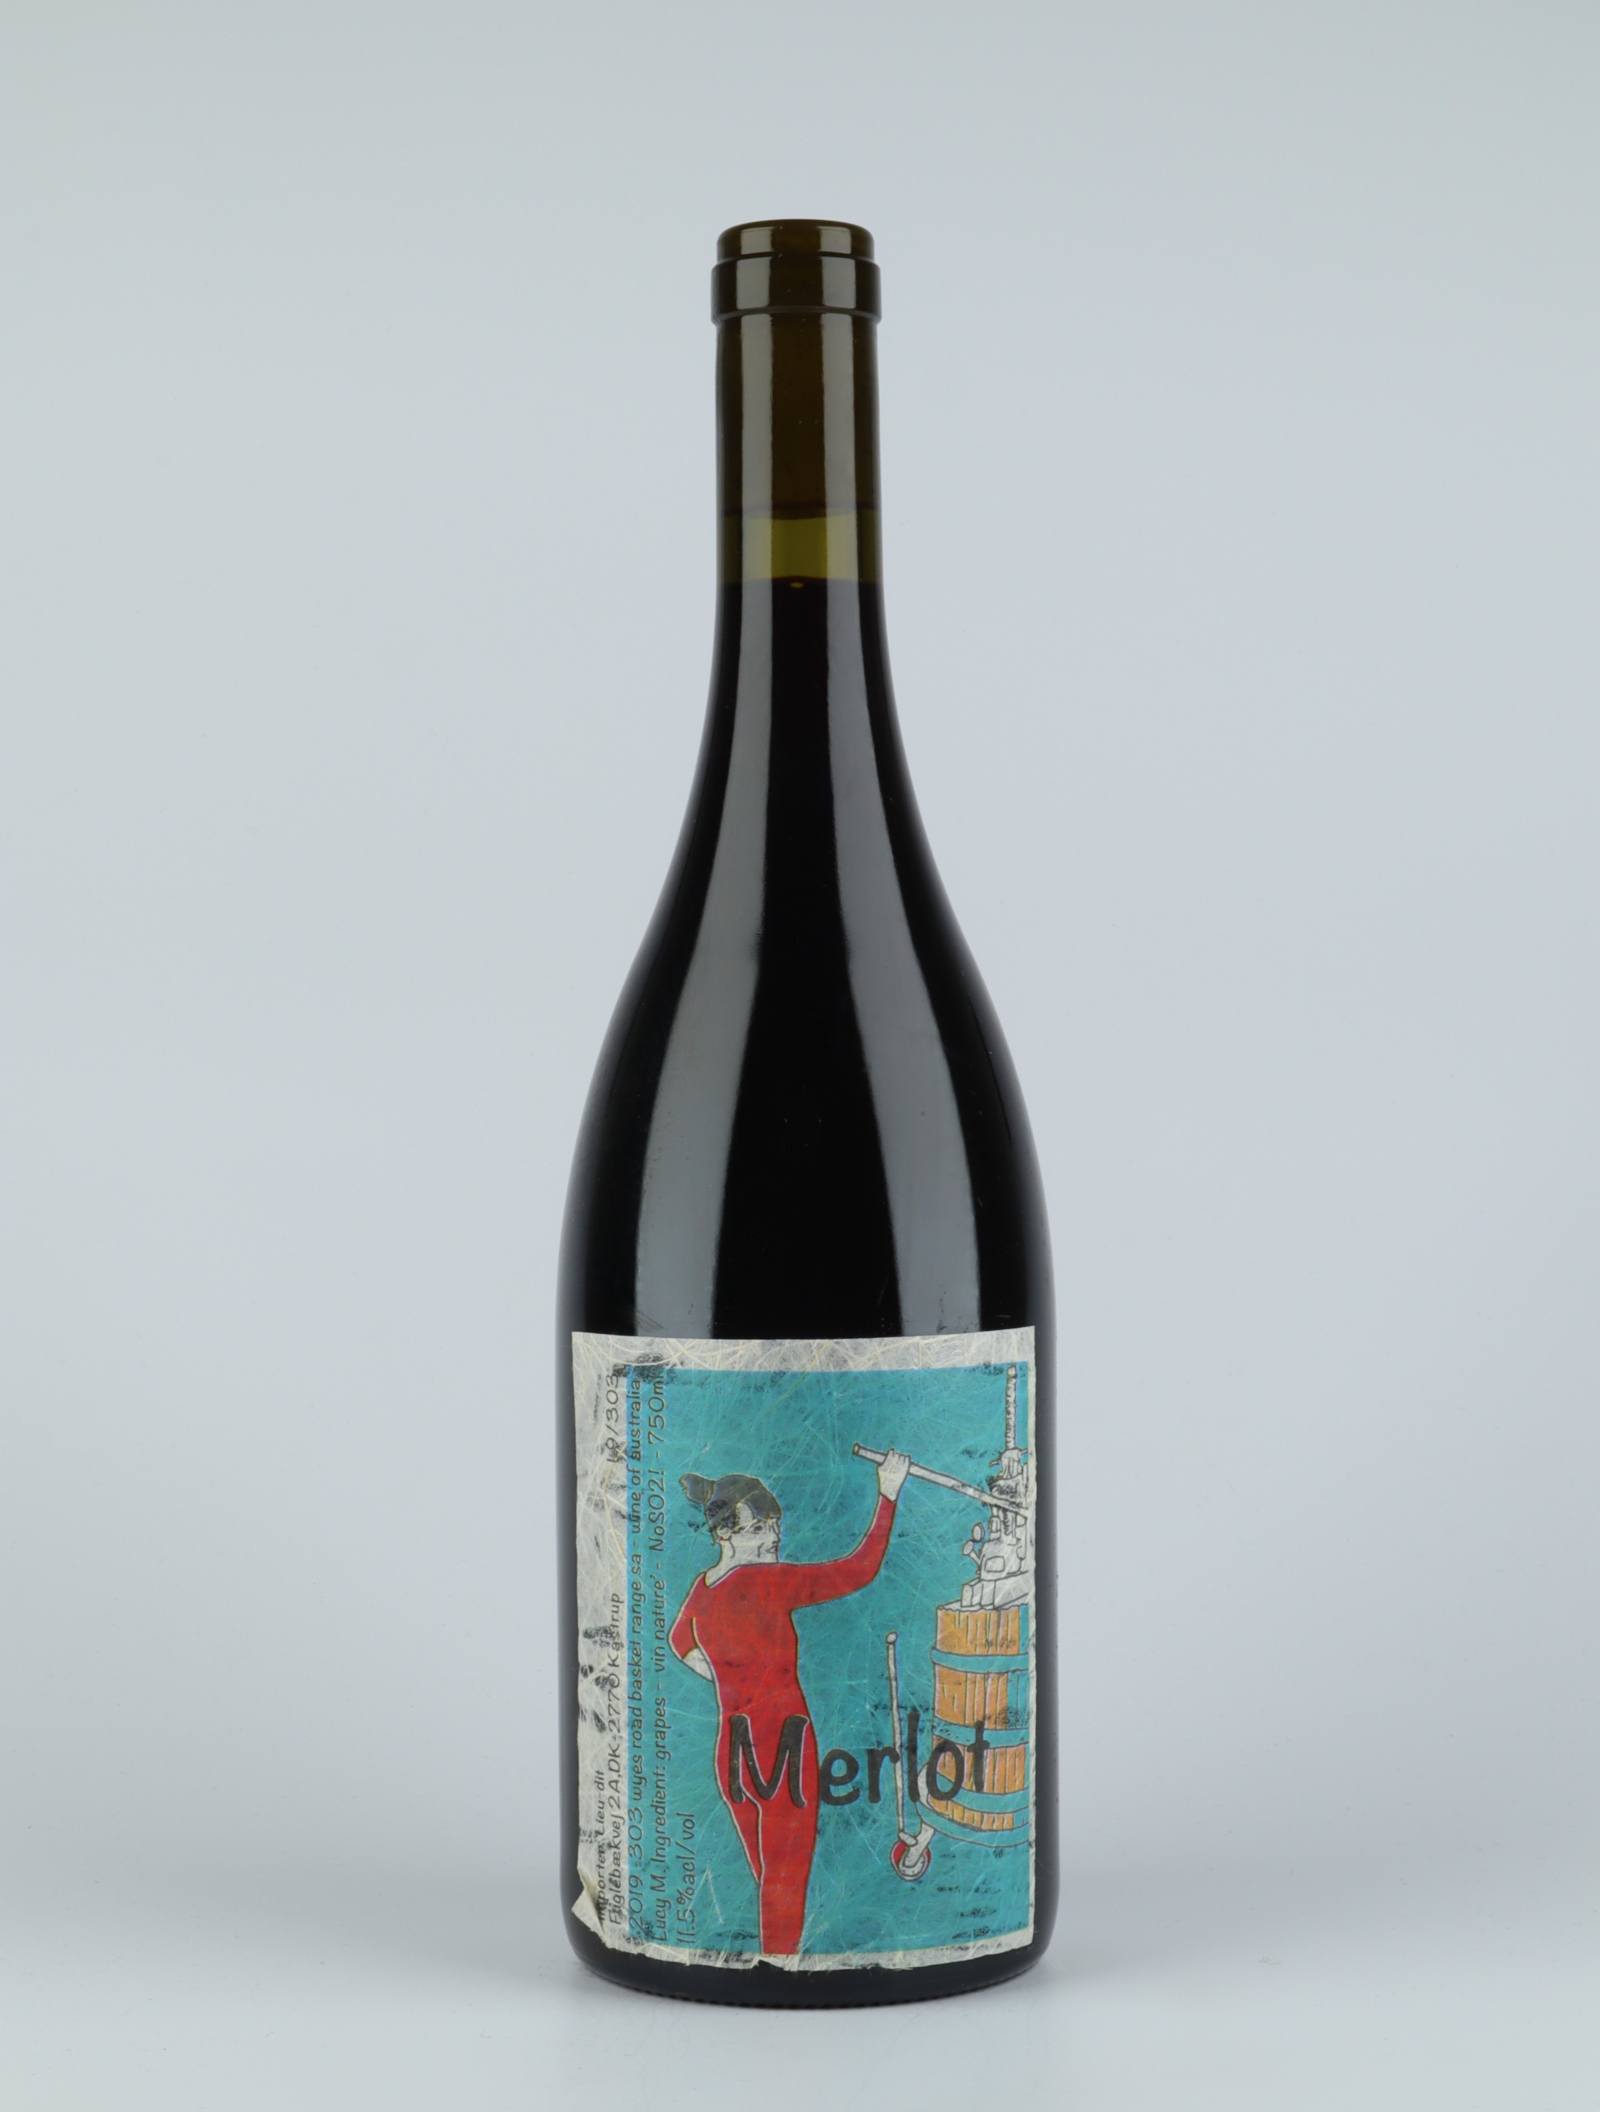 En flaske 2019 Merlot Rødvin fra Lucy Margaux, Adelaide Hills i Australien